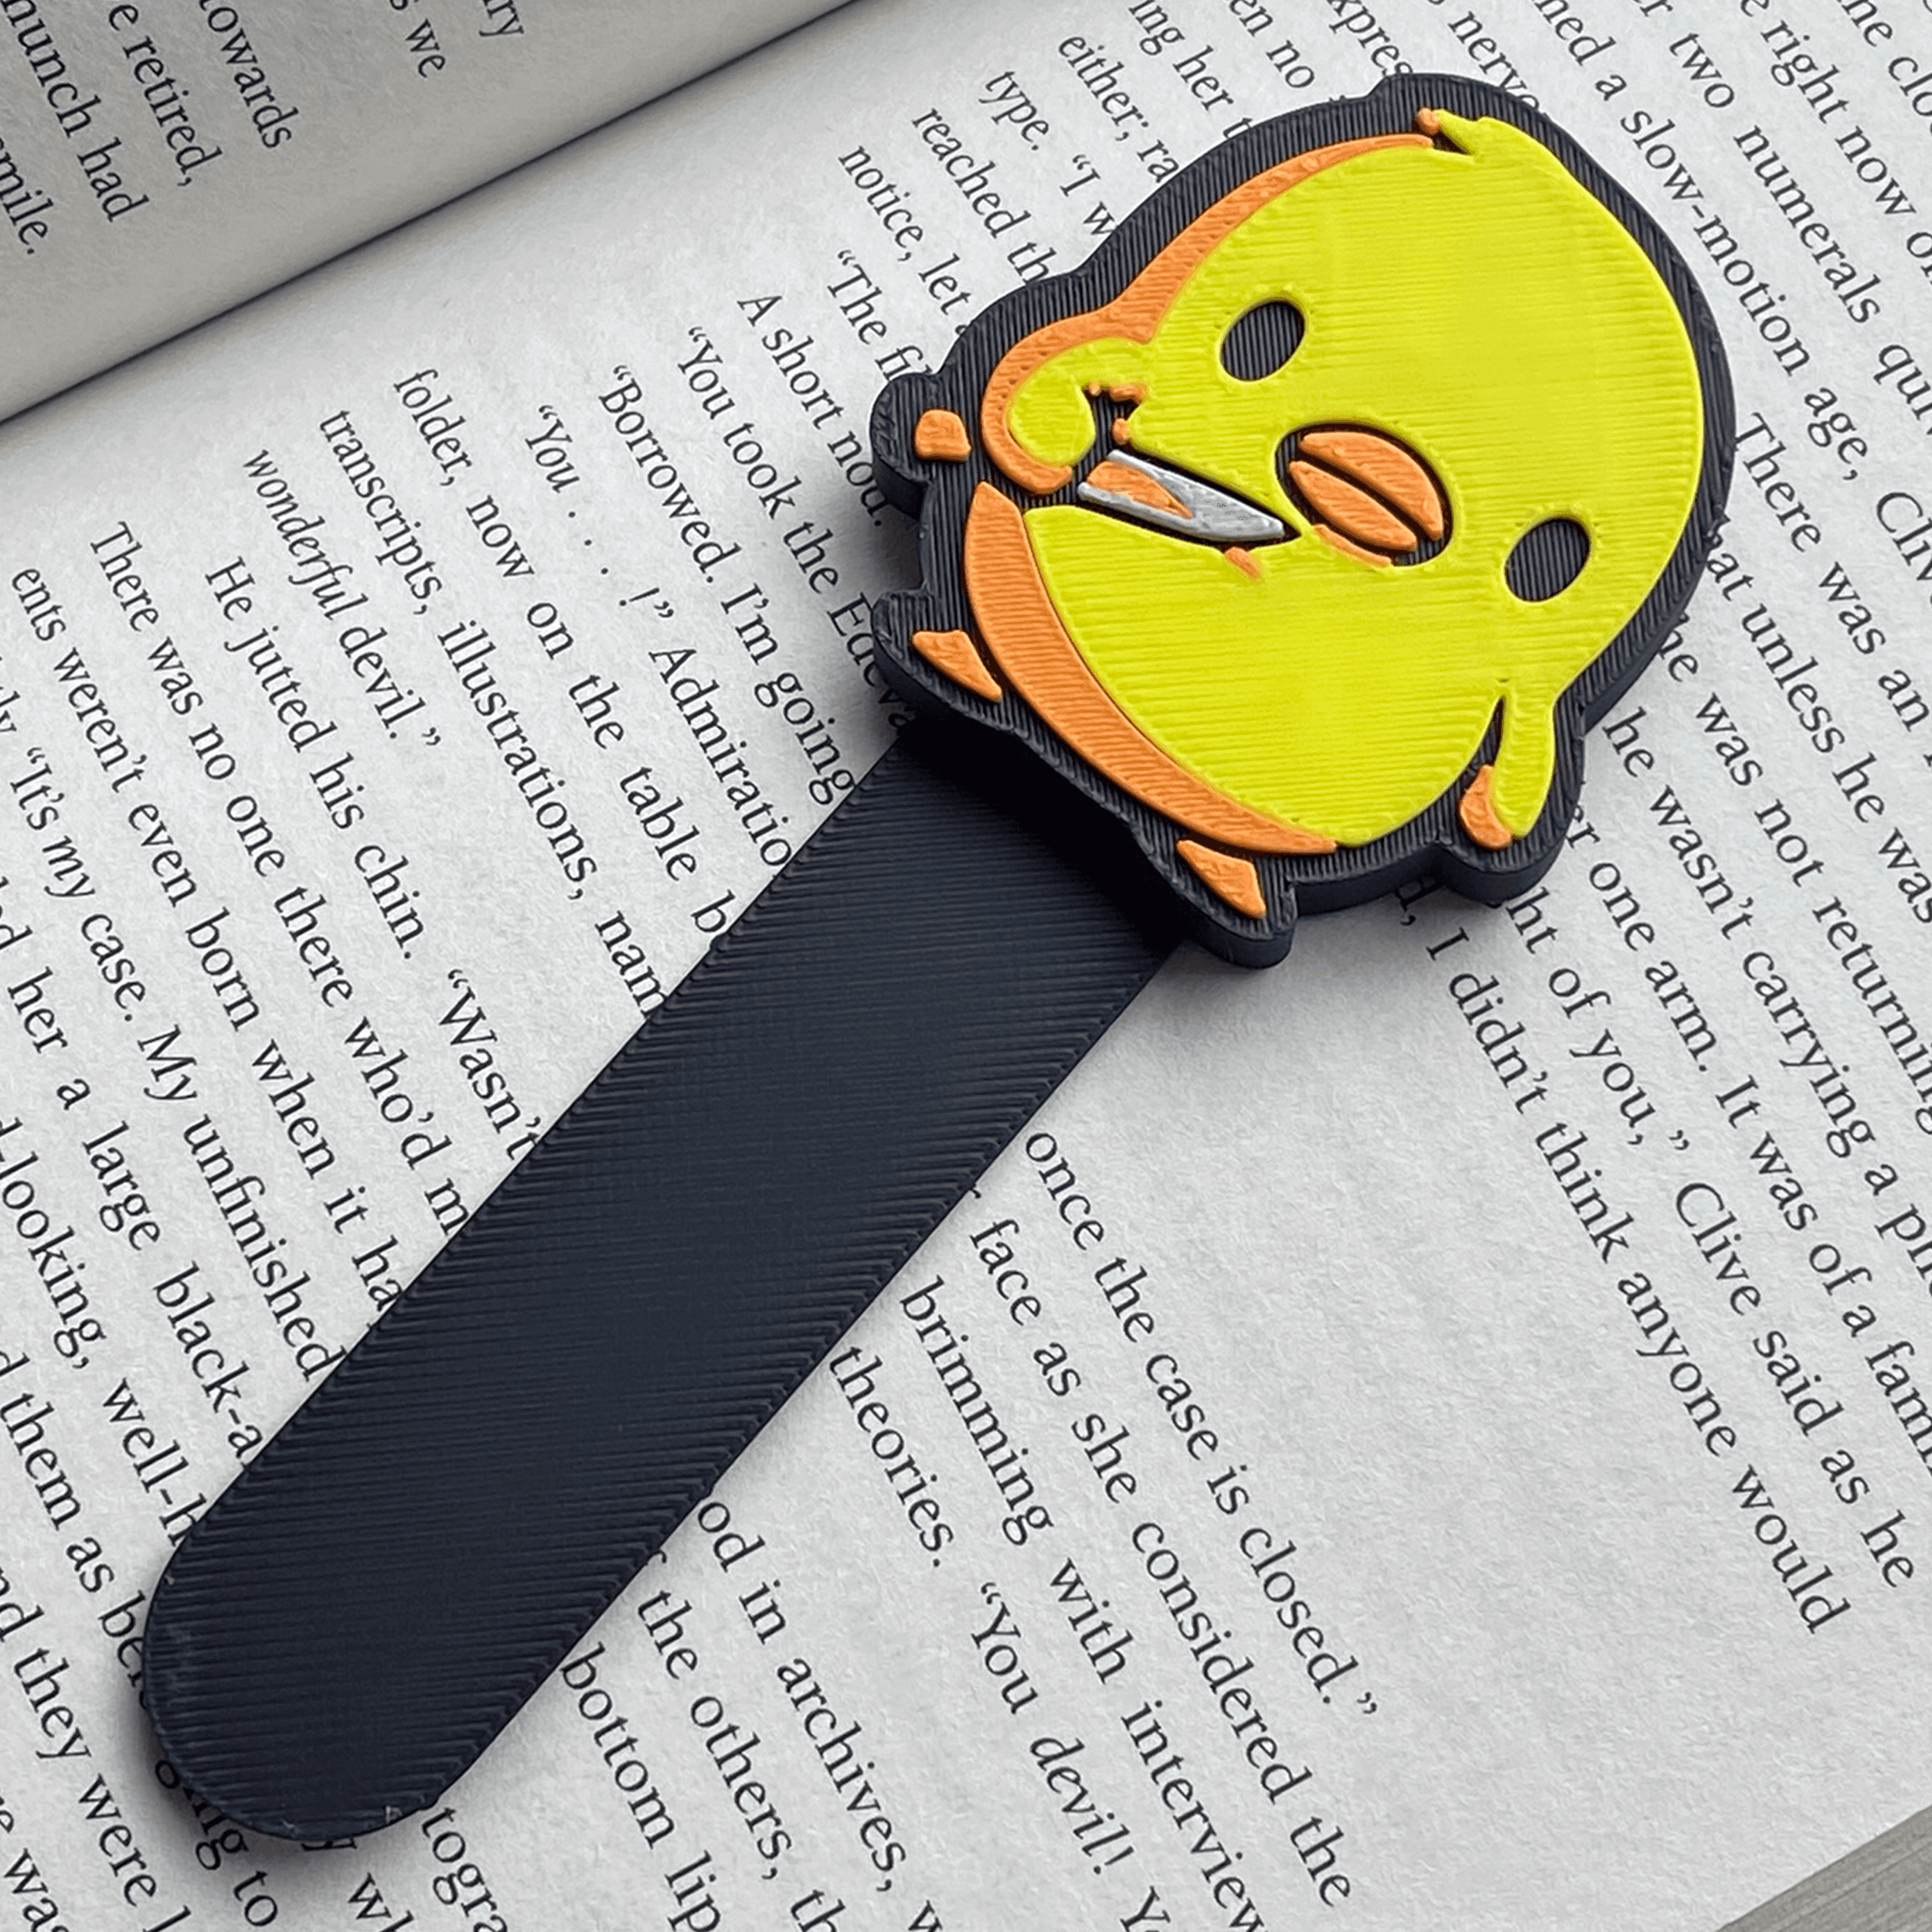 Duck knife bookmark.3mf 3d model